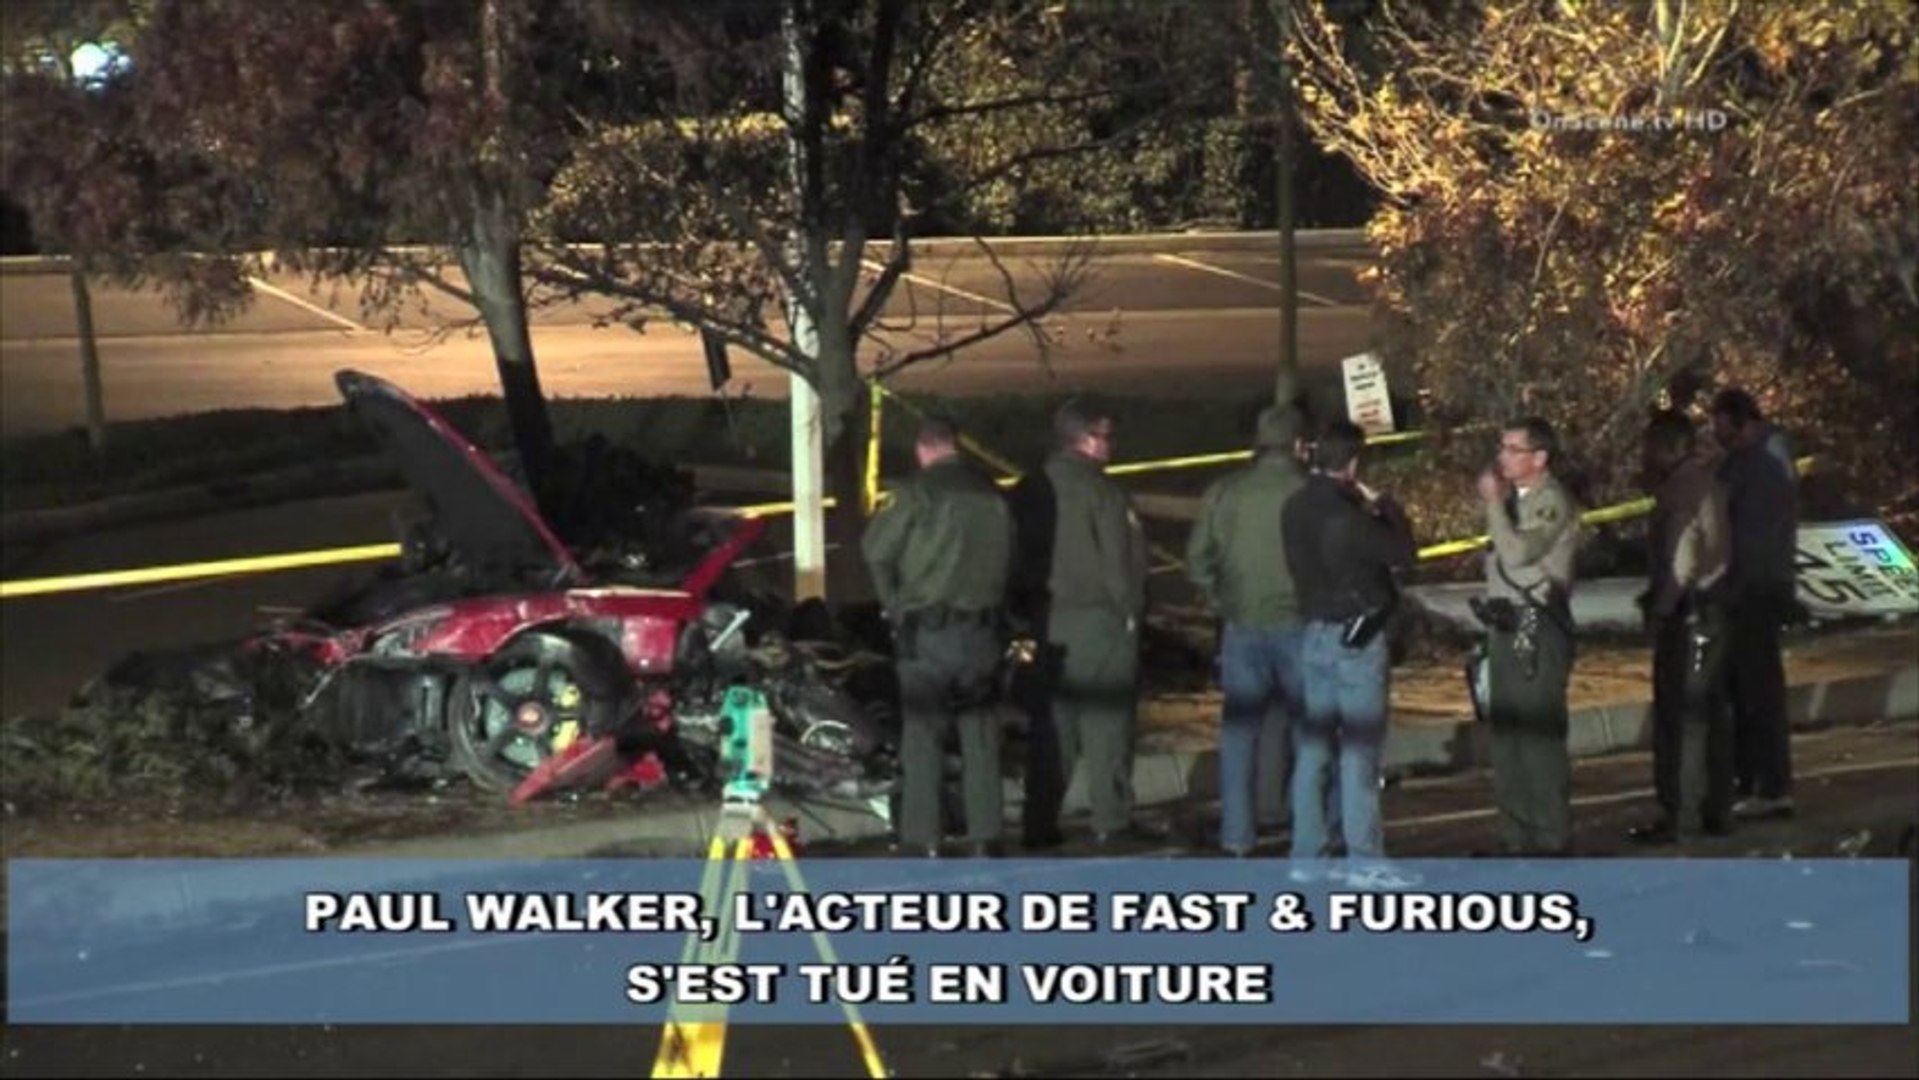 La mort "Fast and furious" de Paul Walker - Vidéo Dailymotion